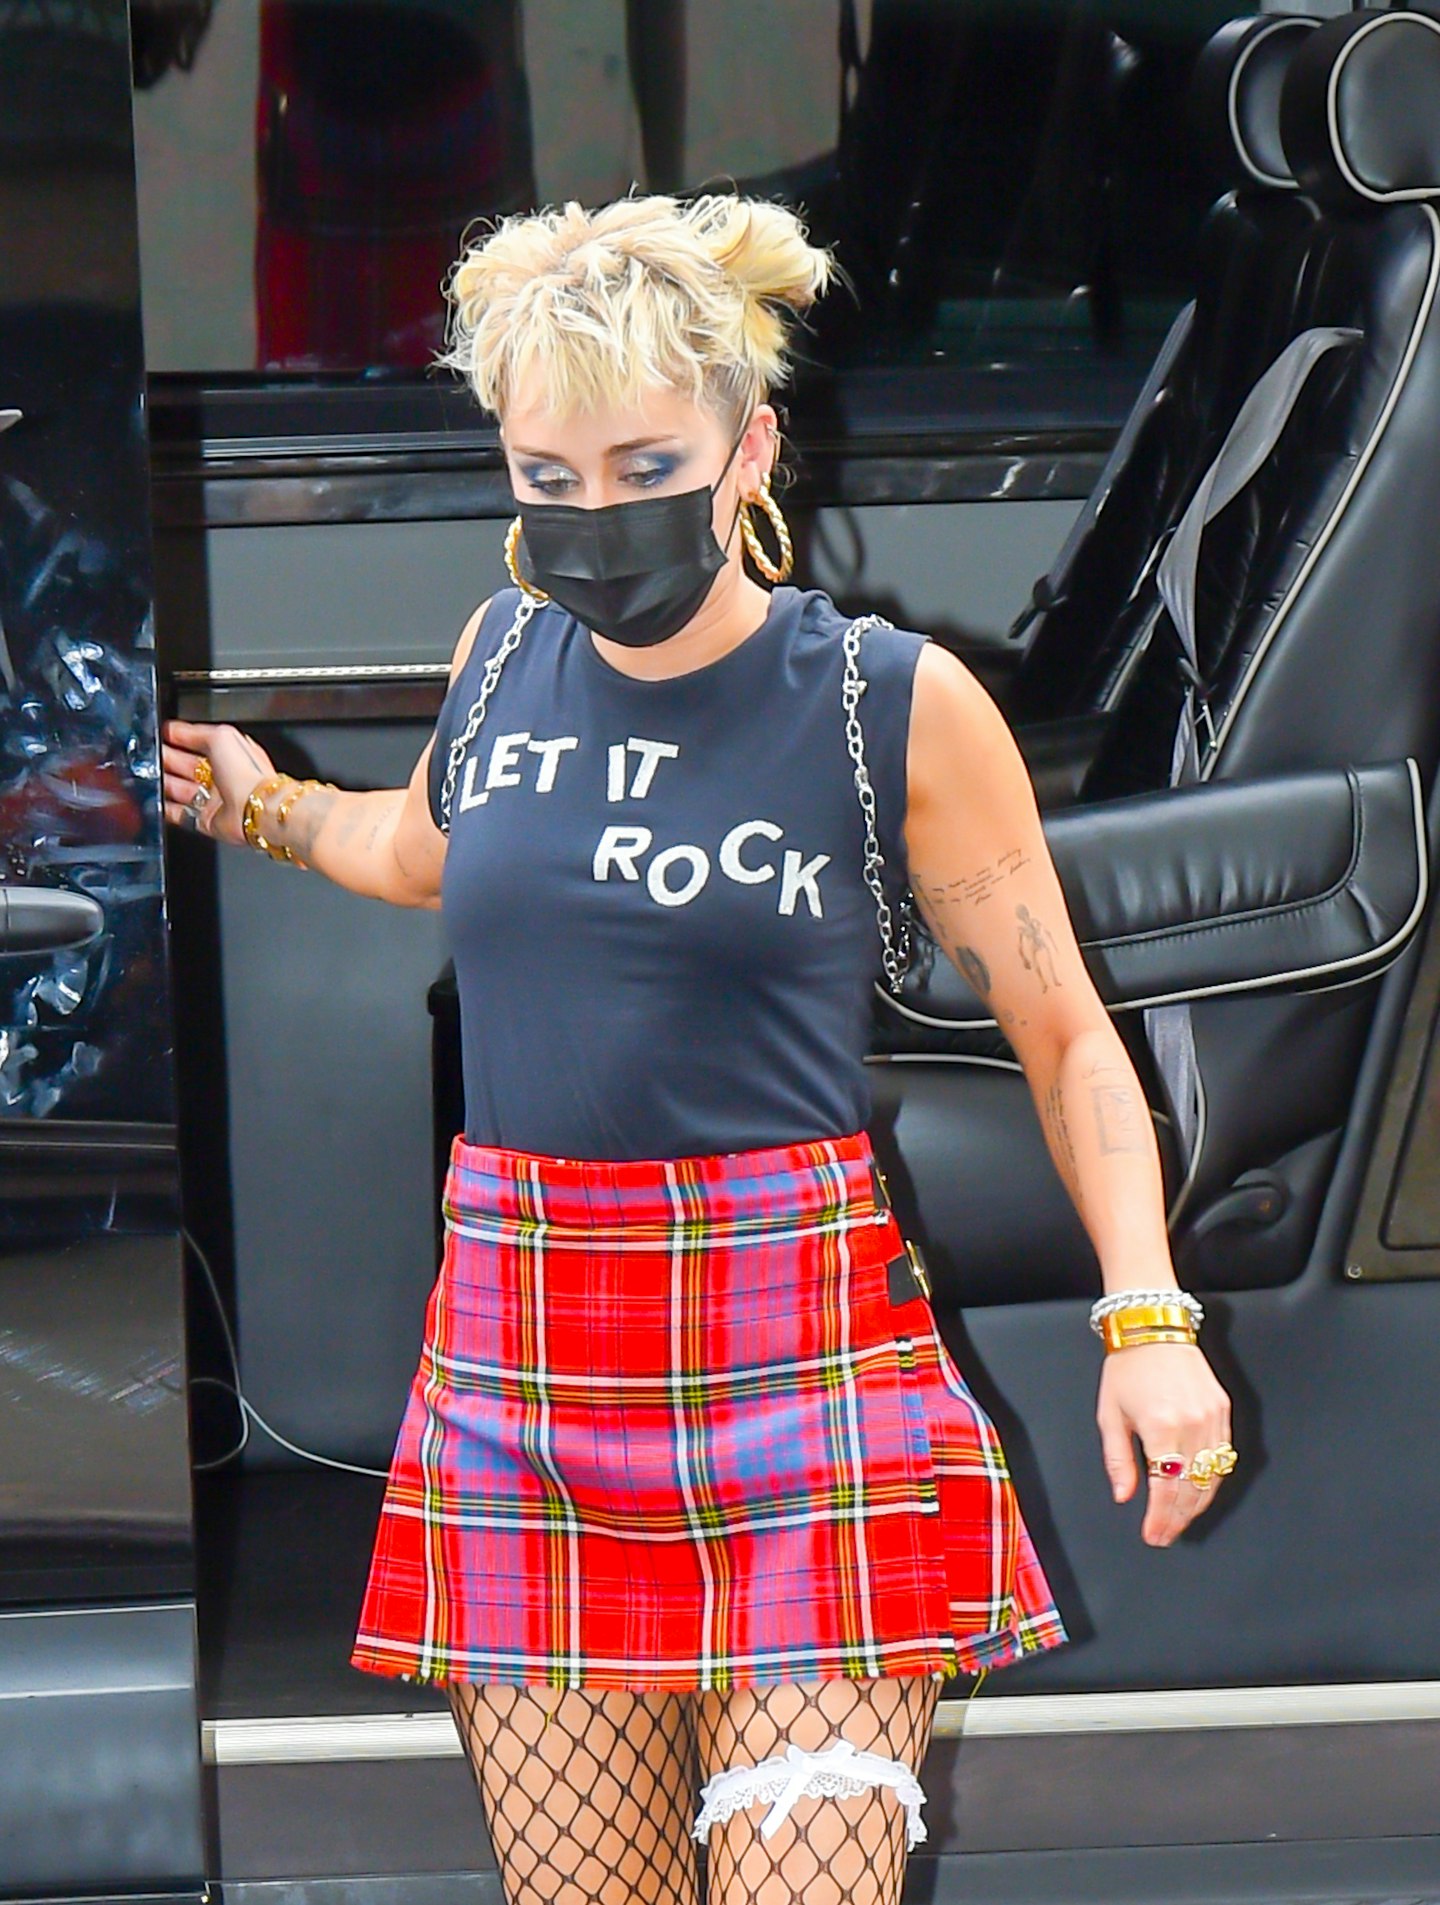 Miley channels her inner rockstar for festival season (Summer 2021)